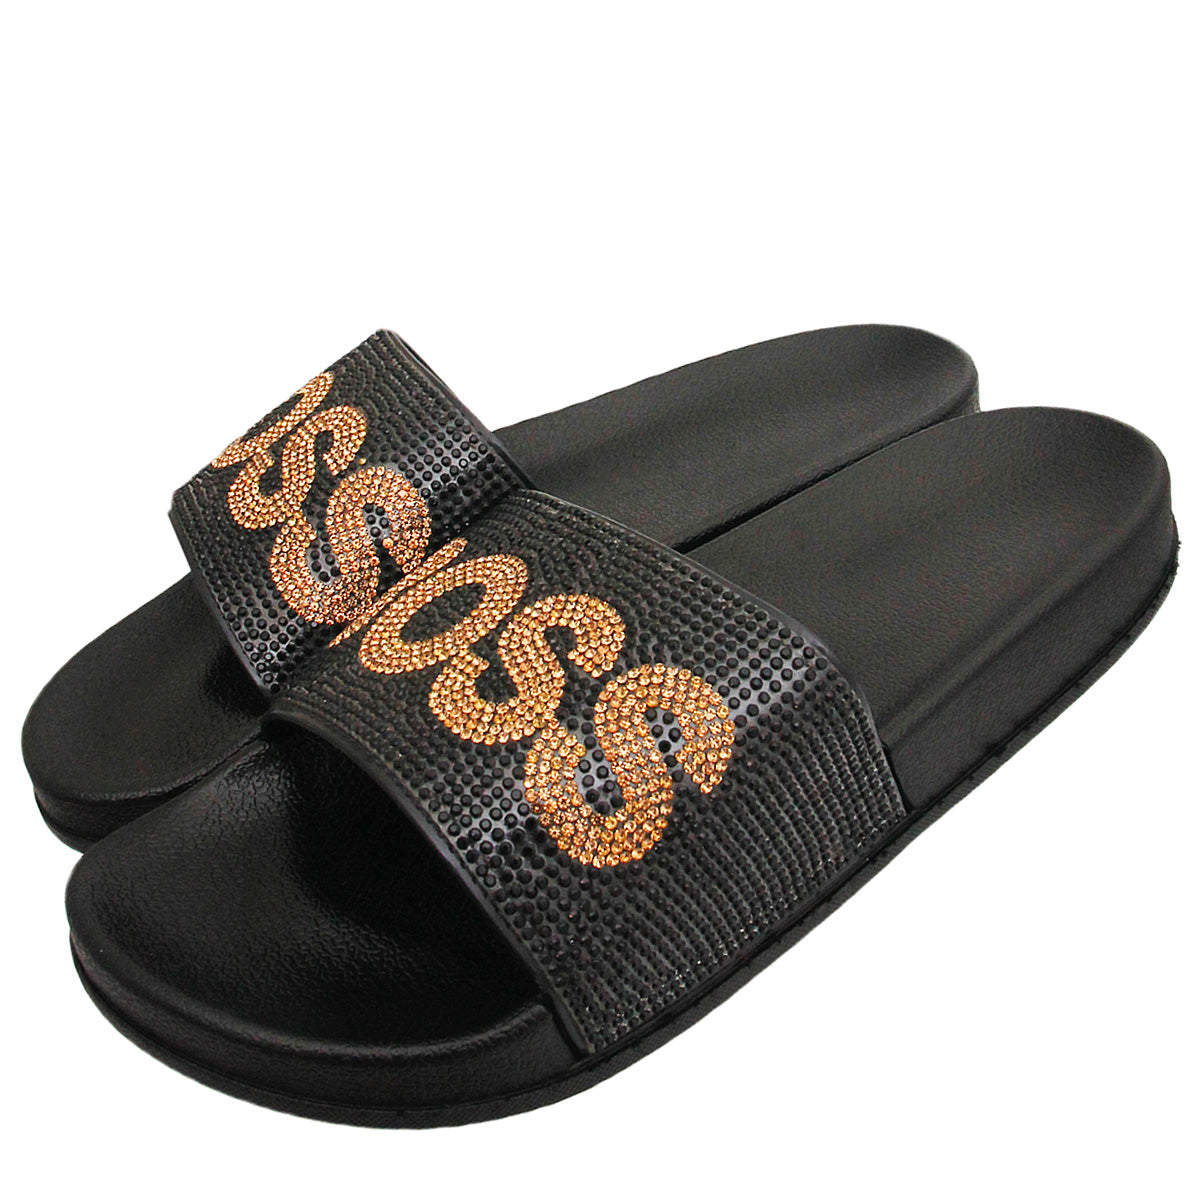 Size 10 BOSS Black Slides